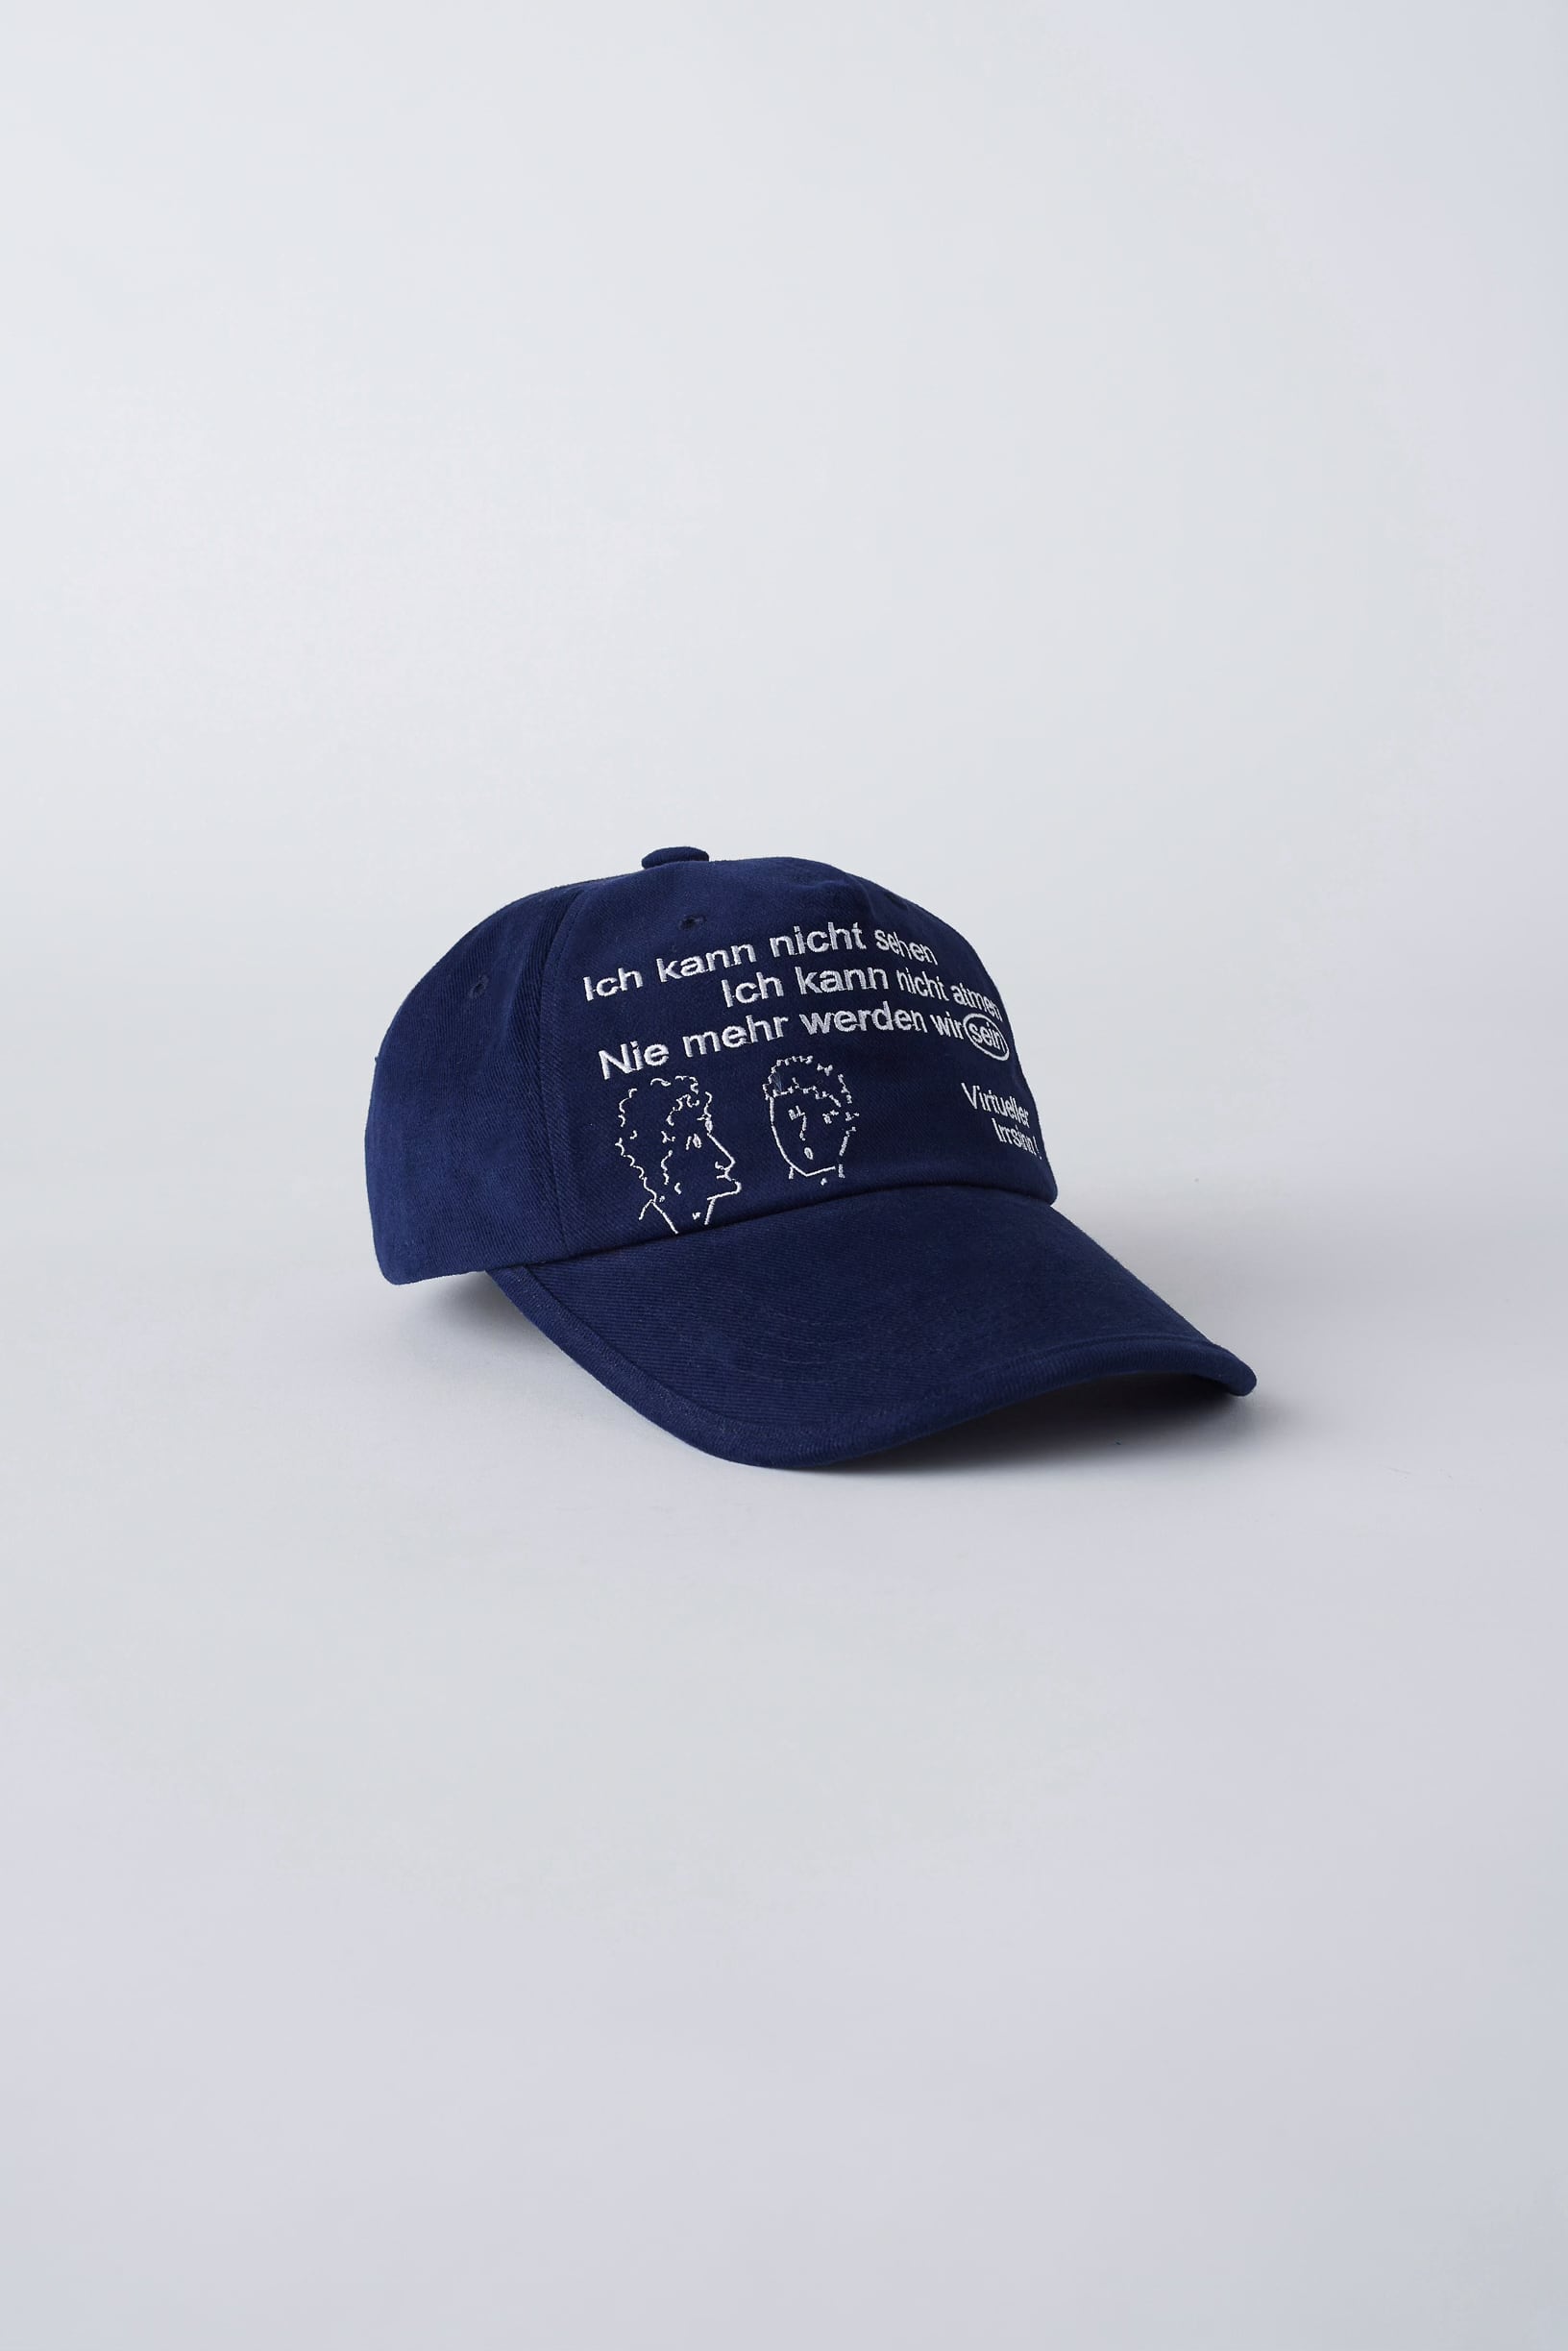 最新発見 LUKE anoniem gadid / キャップ BLUE 帽子 - www.cfch.org